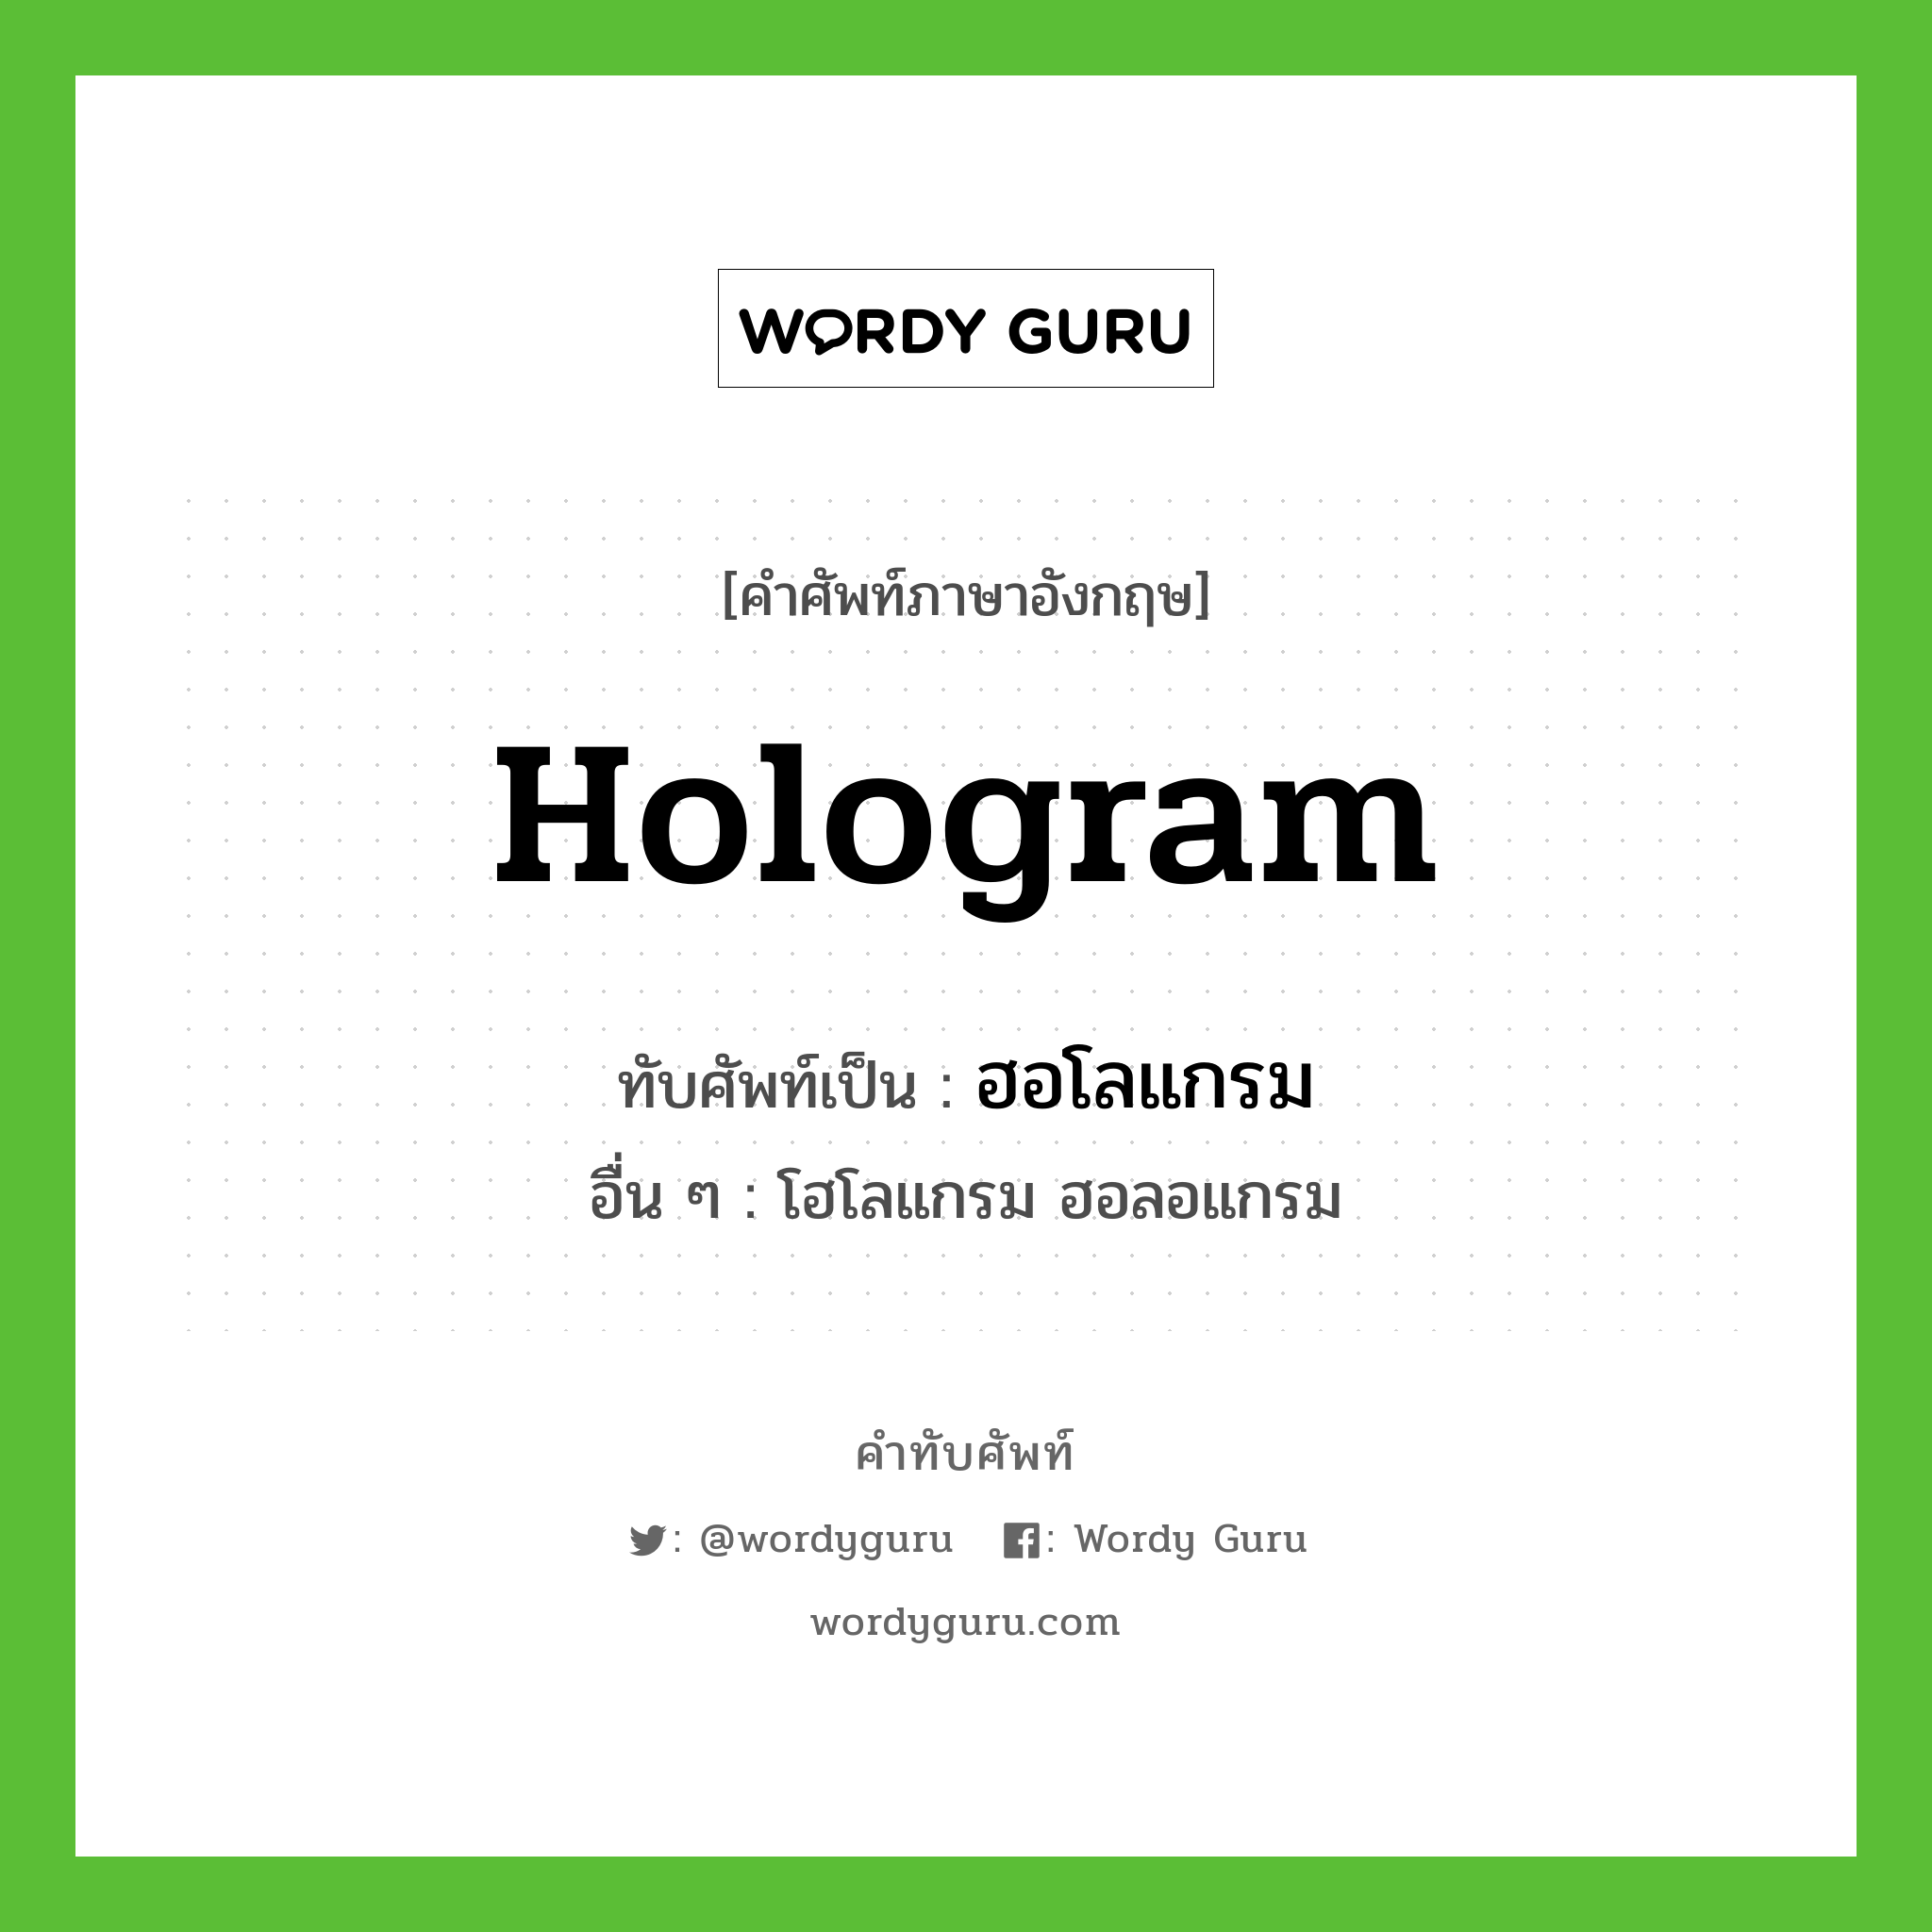 hologram เขียนเป็นคำไทยว่าอะไร?, คำศัพท์ภาษาอังกฤษ hologram ทับศัพท์เป็น ฮอโลแกรม อื่น ๆ โฮโลแกรม ฮอลอแกรม